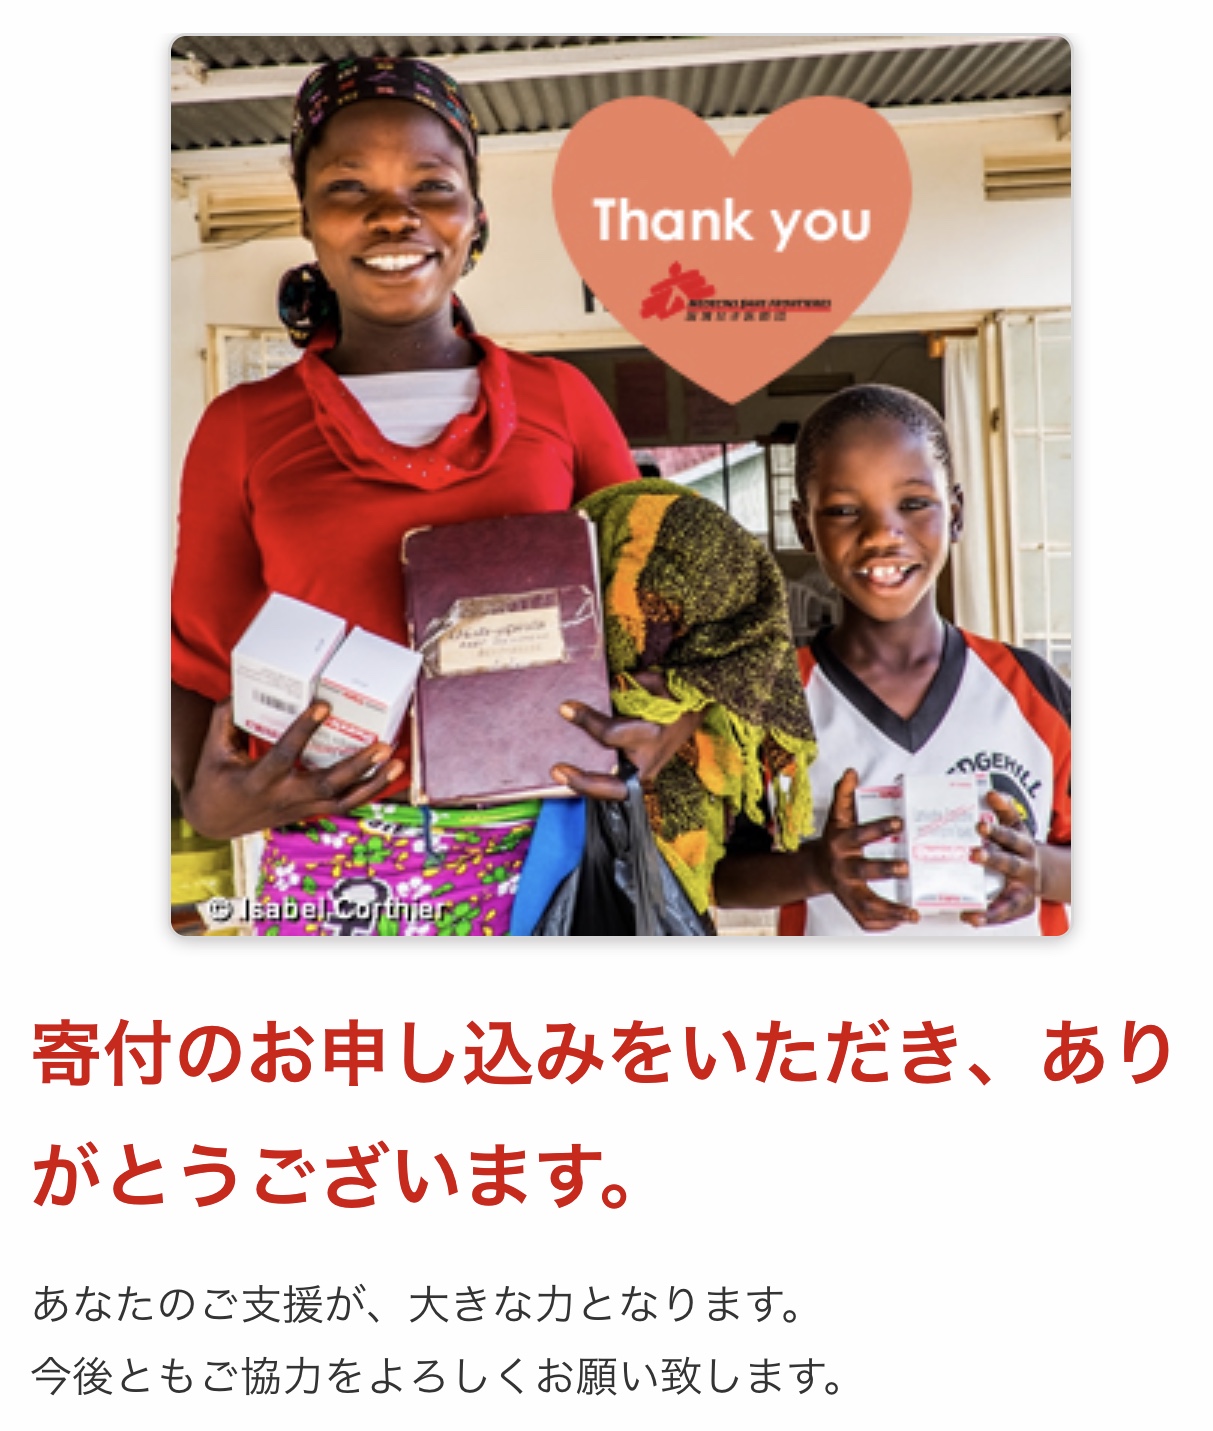 「国境なき医師団日本 新型コロナウイルス感染症危機対応募金」への寄付